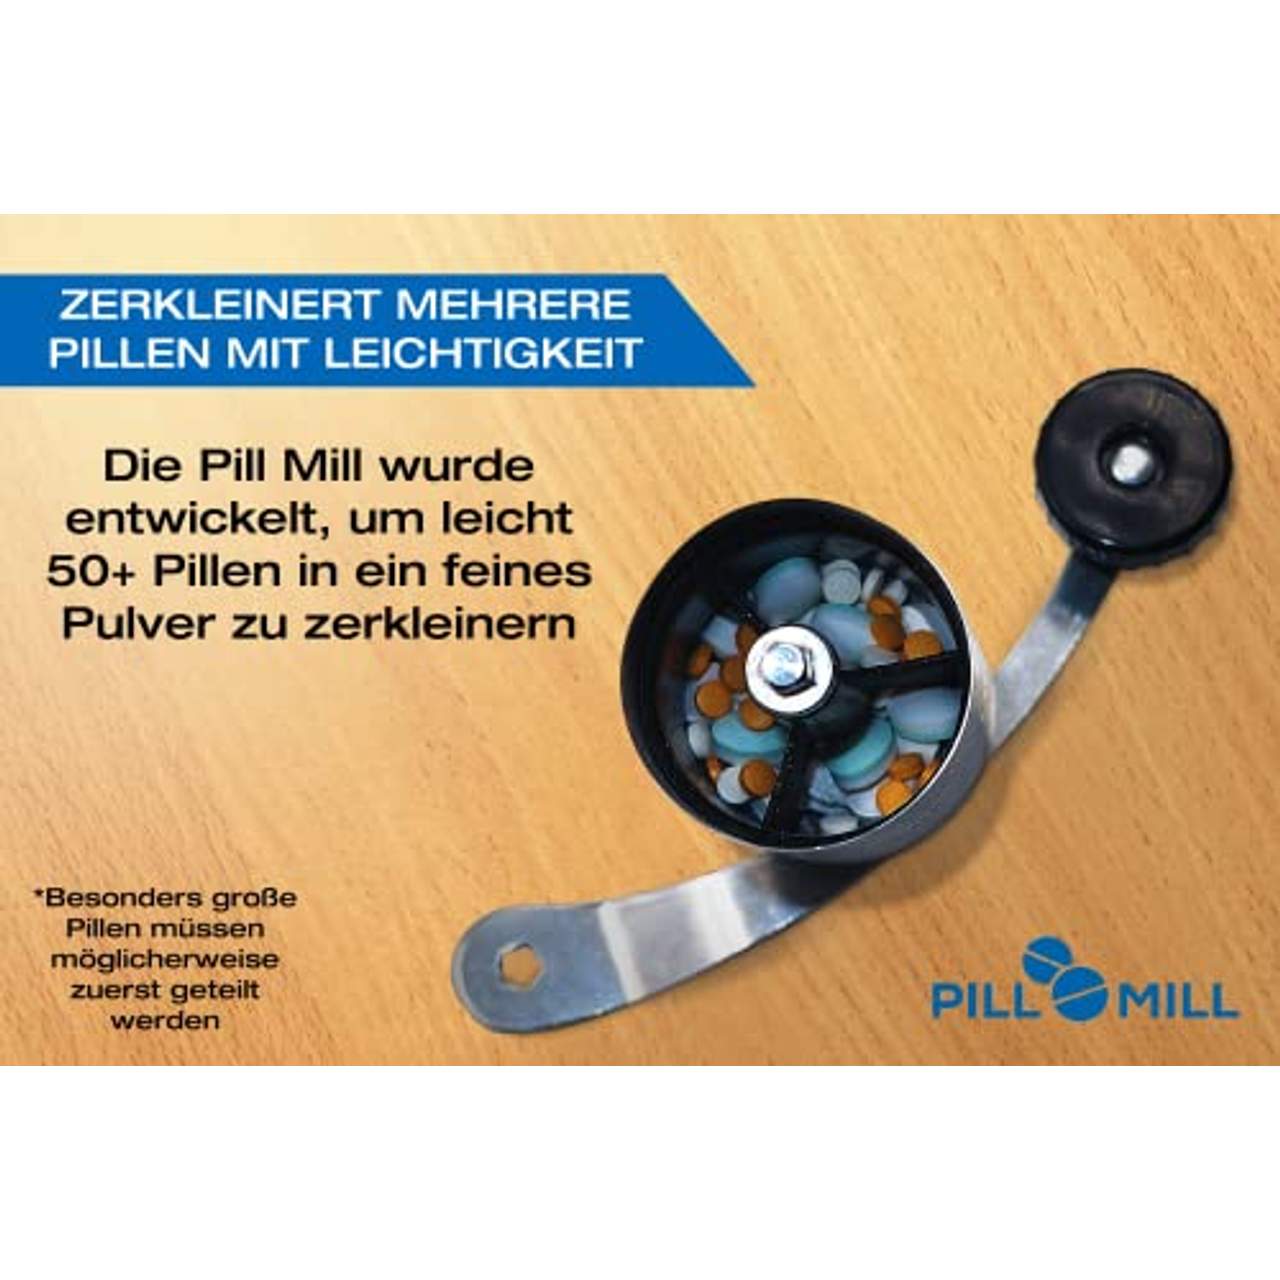 Pill Mill Tablettenmörser Zerkleinert mehrere Tabletten zu einem feinen Pulver